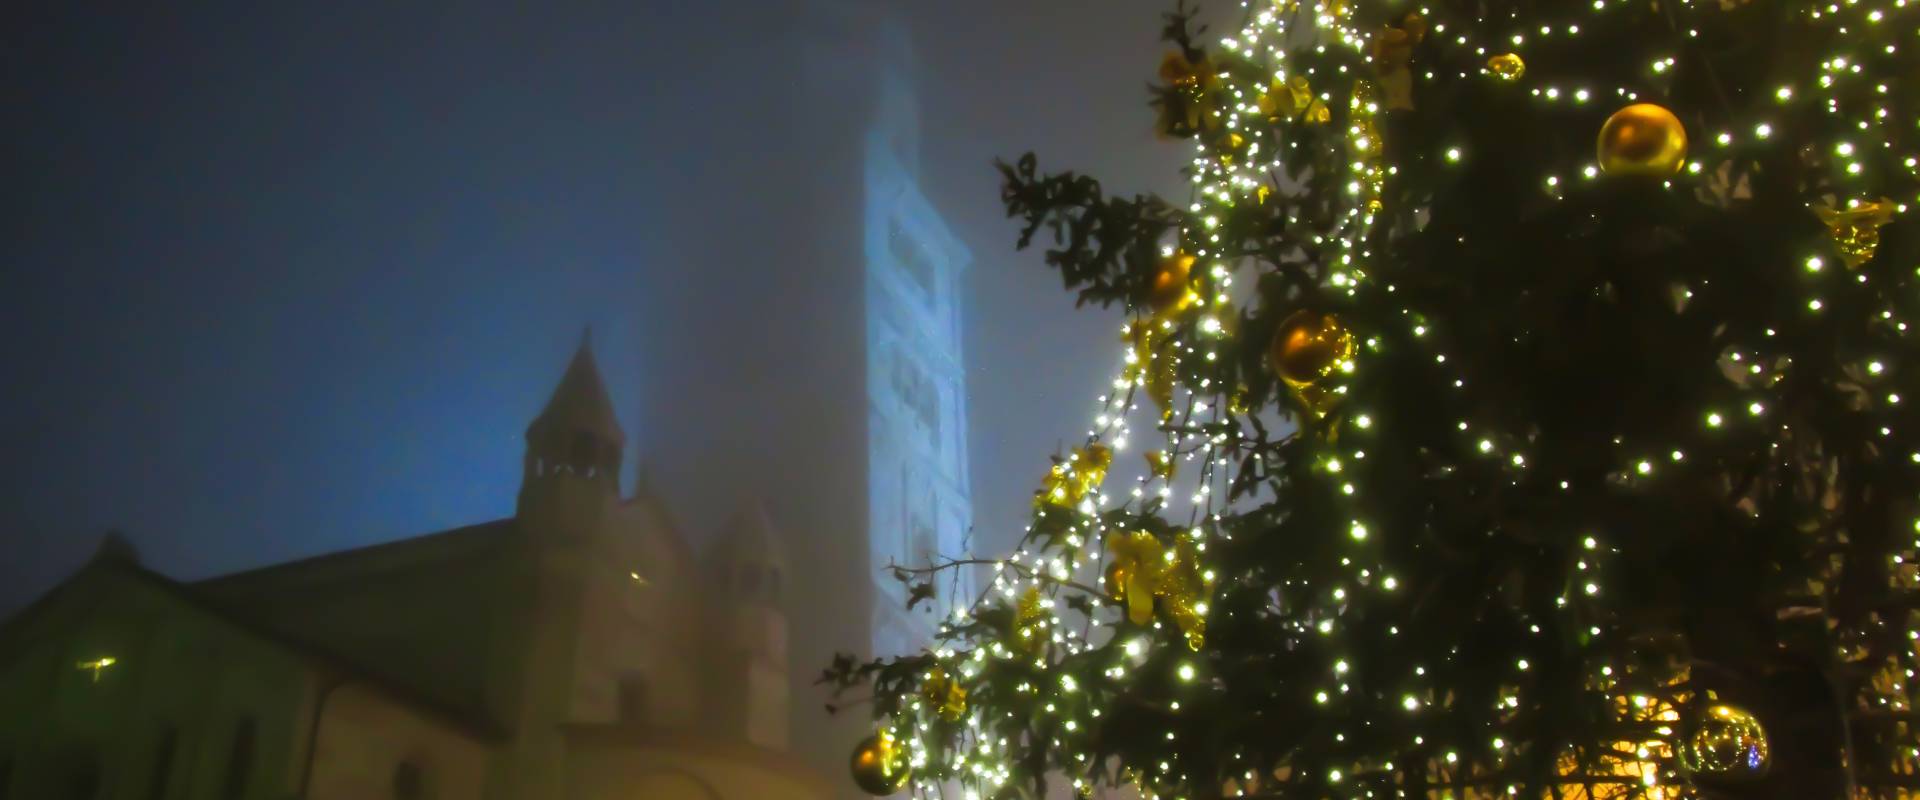 Piazza Grande durante il periodo natalizio foto di Angelo nacchio